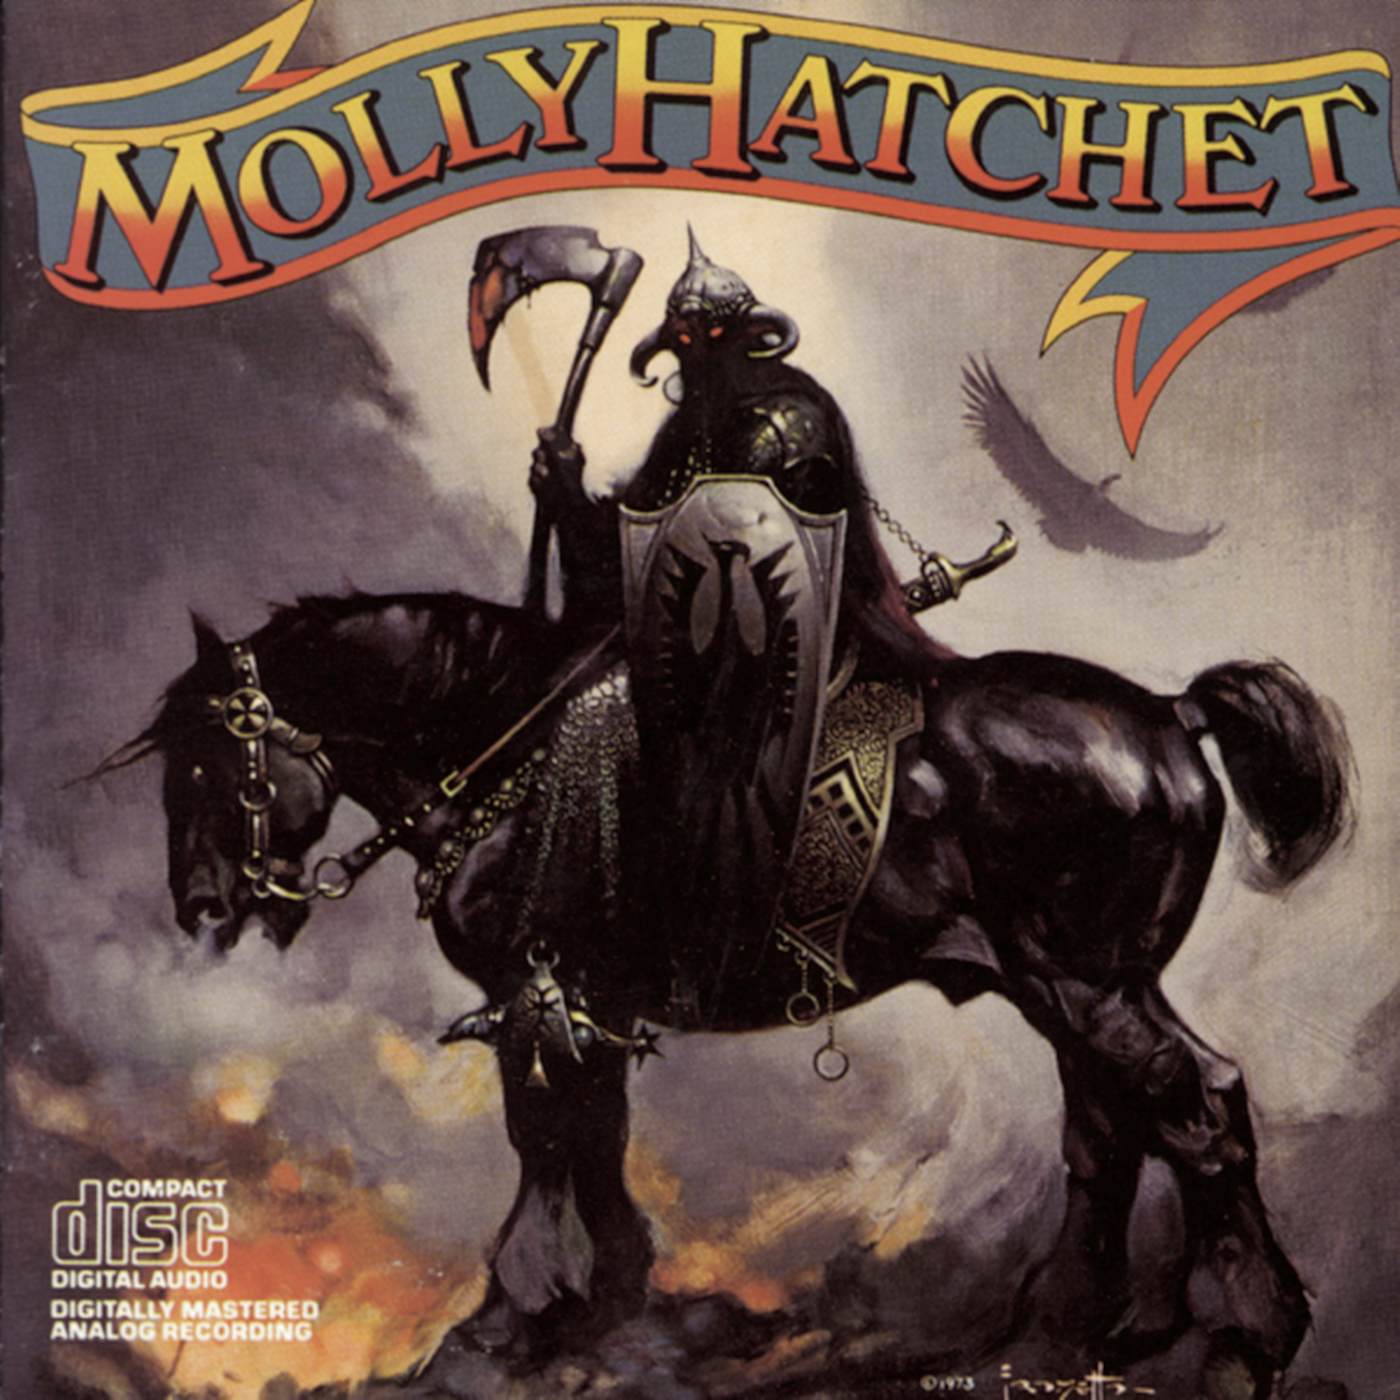 MOLLY HATCHET CD